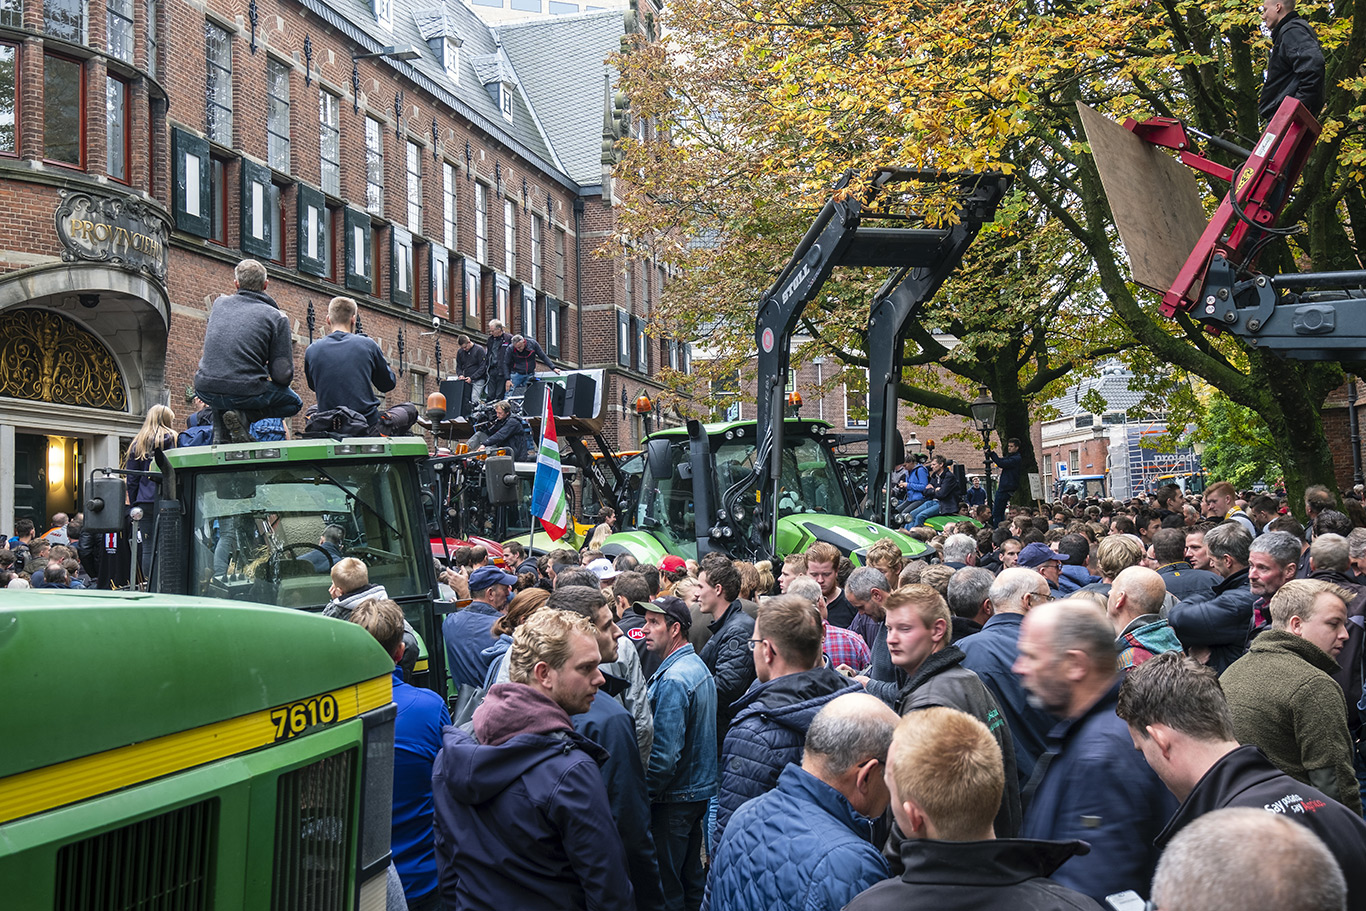 Boerenprotest - Op maandag 14 Oktober 2019 trokken honderden boeren met hun trekkers naar het provinciehuis in het centrum van de stad Groningen